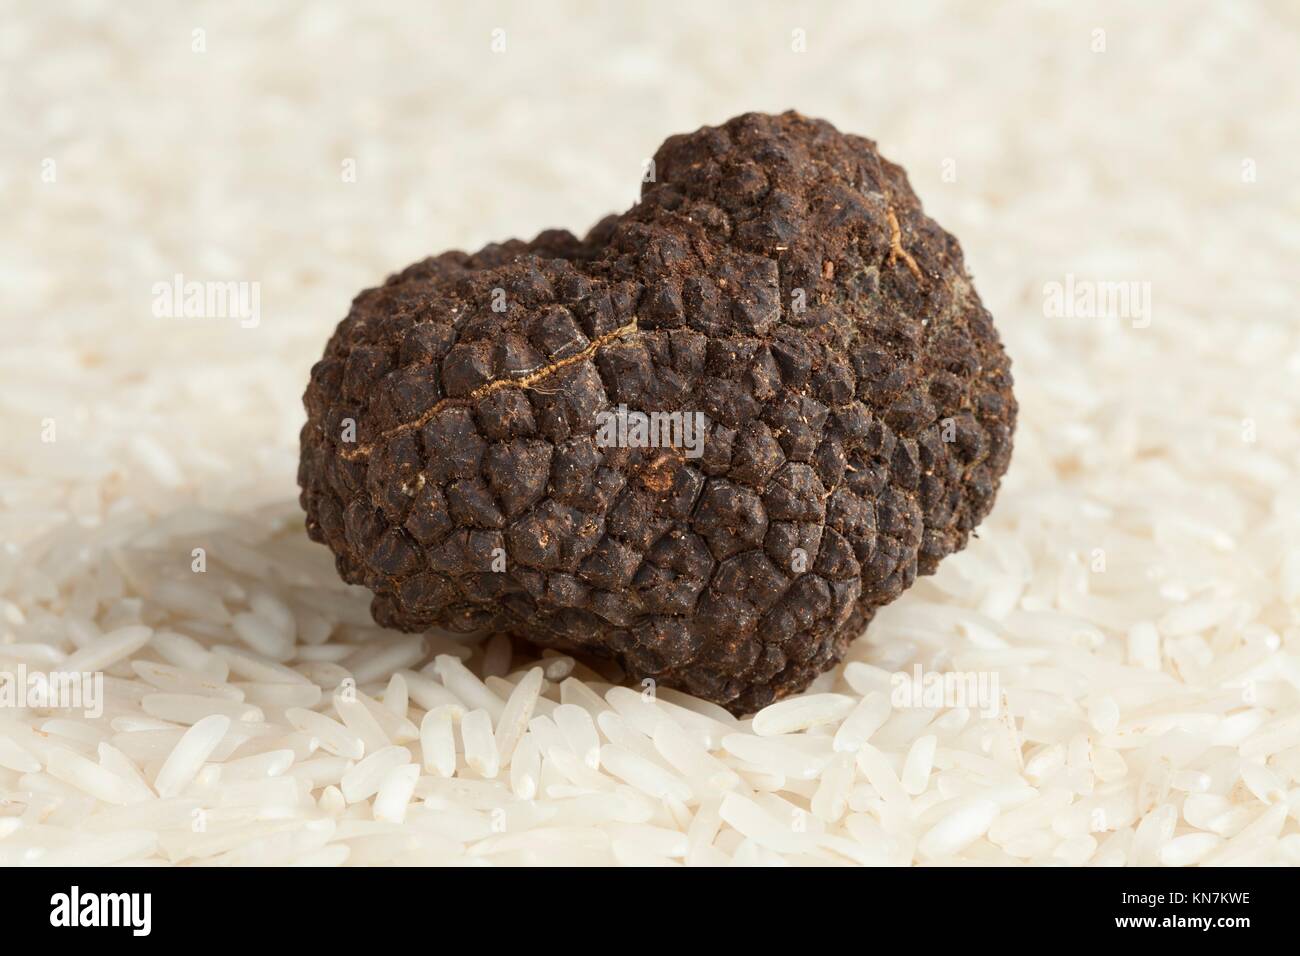 Fresh whole black truffle on basmati rice. Stock Photo